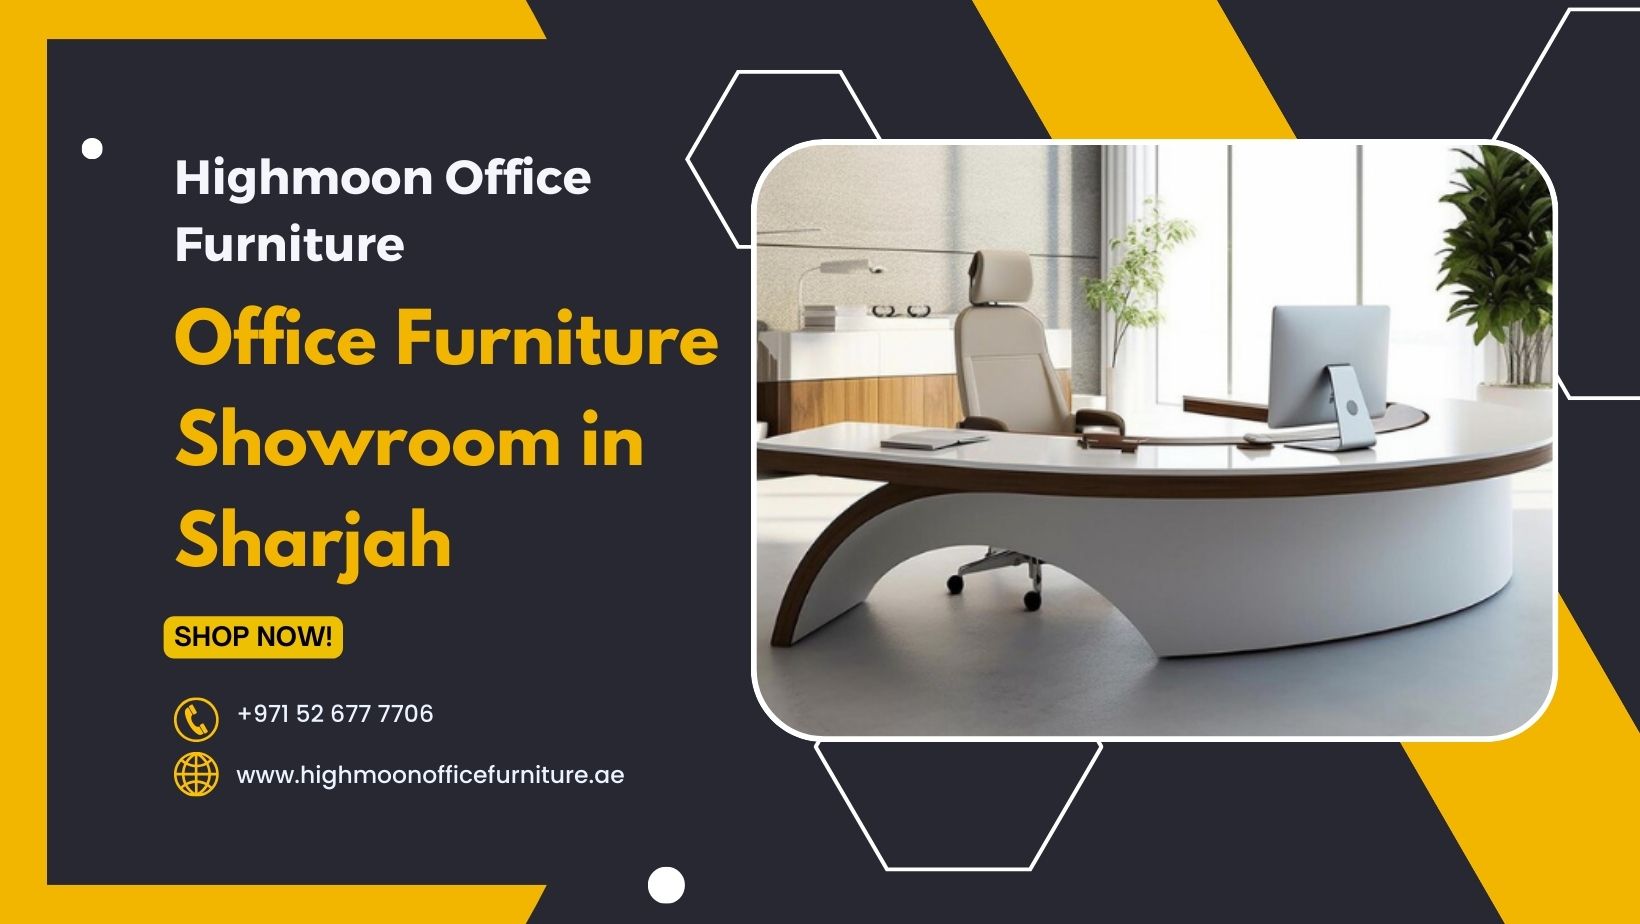 Office Furniture Showroom in Sharjah